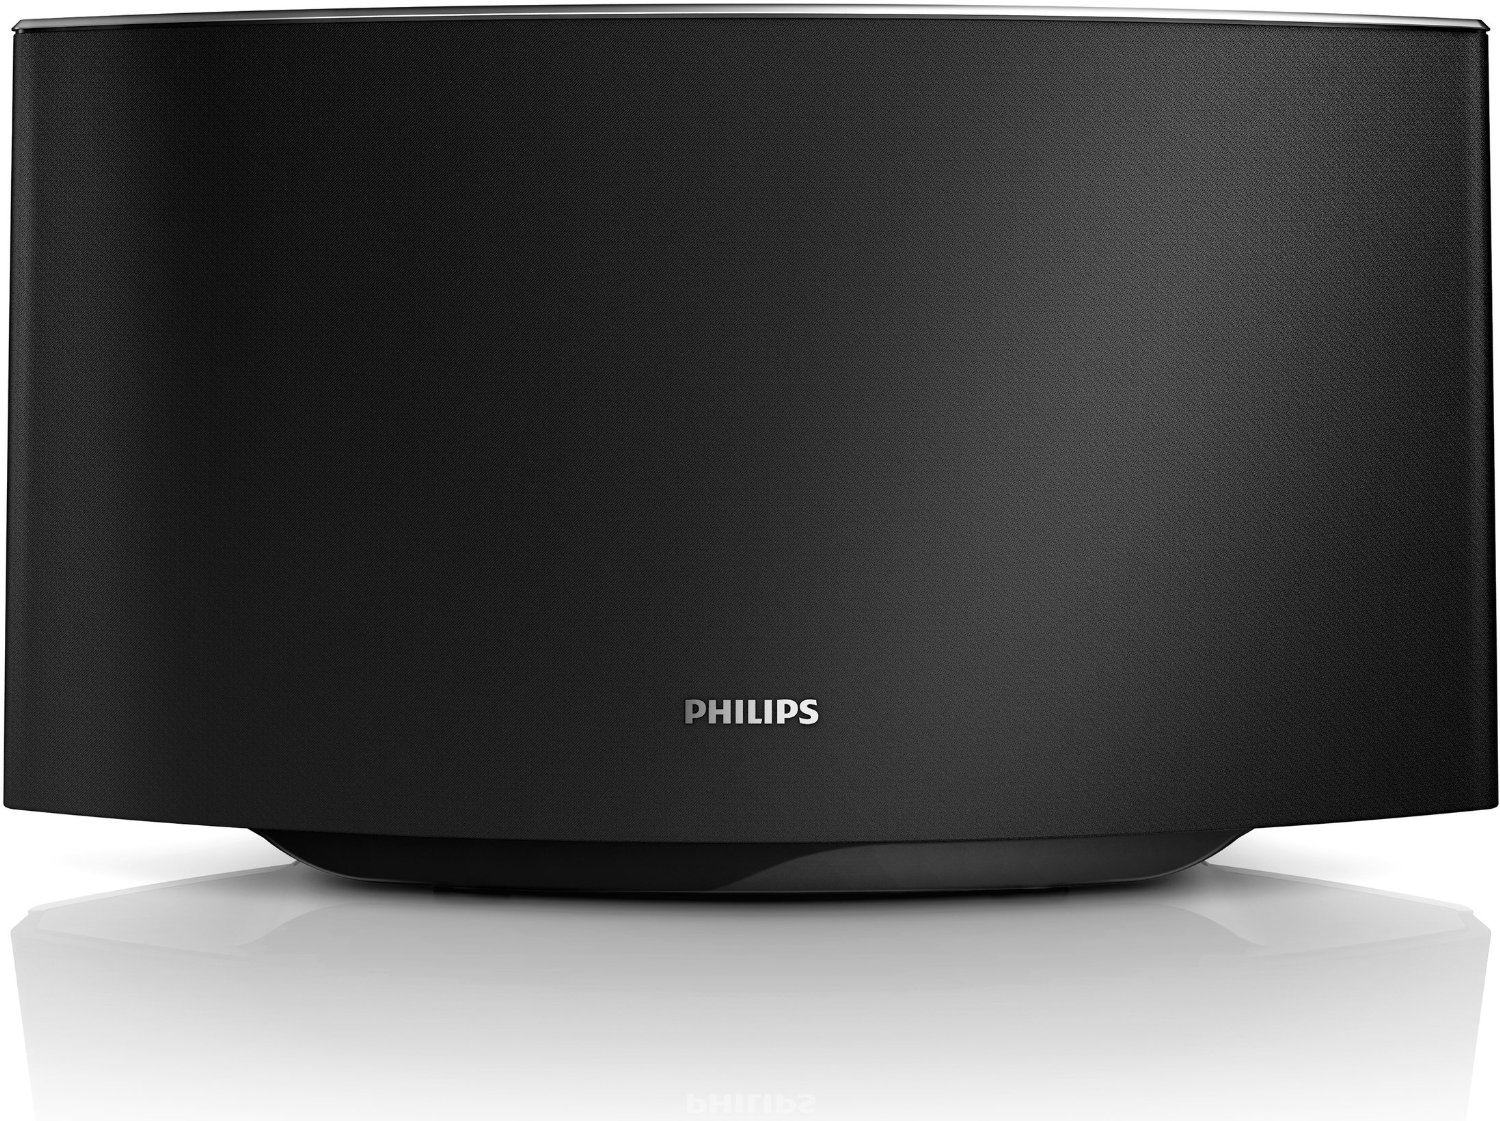 Philips AD7000W:37 Fidelio SoundAvia Wireless Speaker with AirPlay